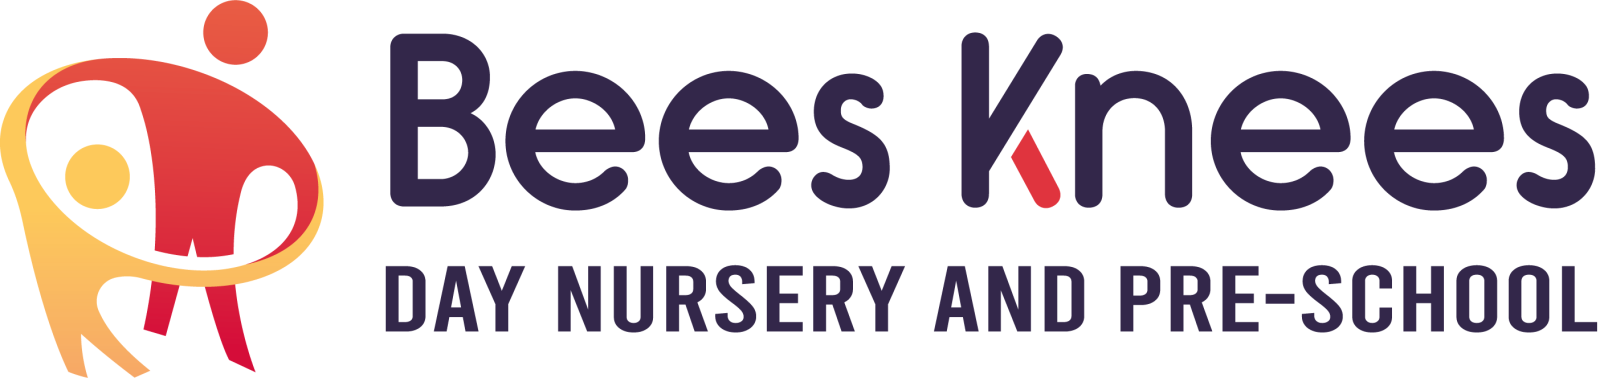 Bees Knees Day Nursery & Pre-School